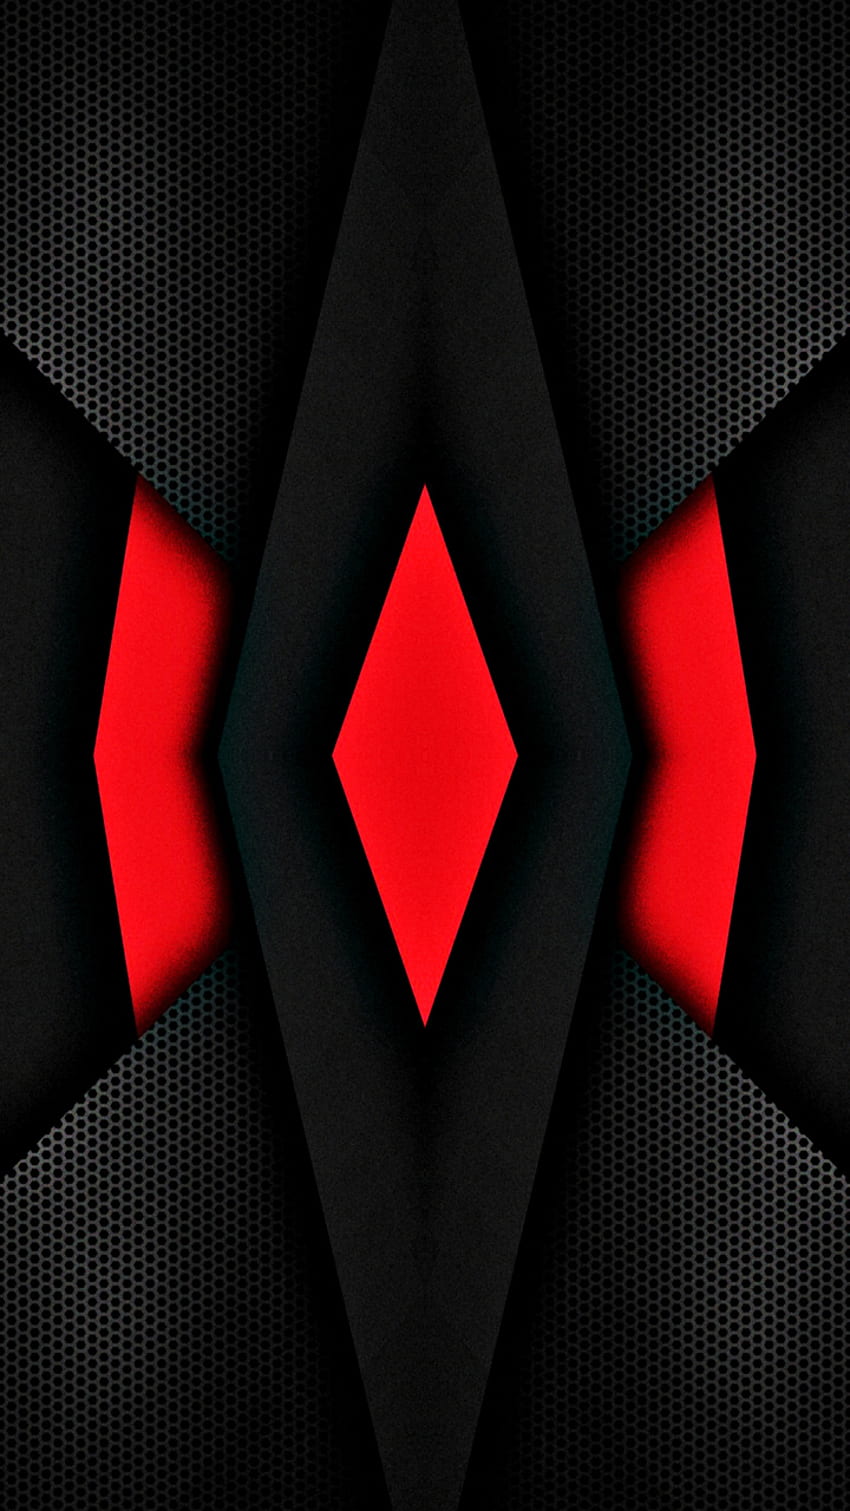 Hình nền đen đỏ neon 3D (Black and red neon 3D wallpaper): Hình nền đen đỏ neon 3D được thiết kế với màu sắc rực rỡ, bắt mắt và hiện đại. Những đường neon sáng bừng làm nổi bật sự kết hợp giữa màu đỏ và đen, mang đến cho người dùng cảm giác thú vị và phấn khích. Hình nền đen đỏ neon 3D chắc chắn sẽ làm chao đảo trái tim của bạn.